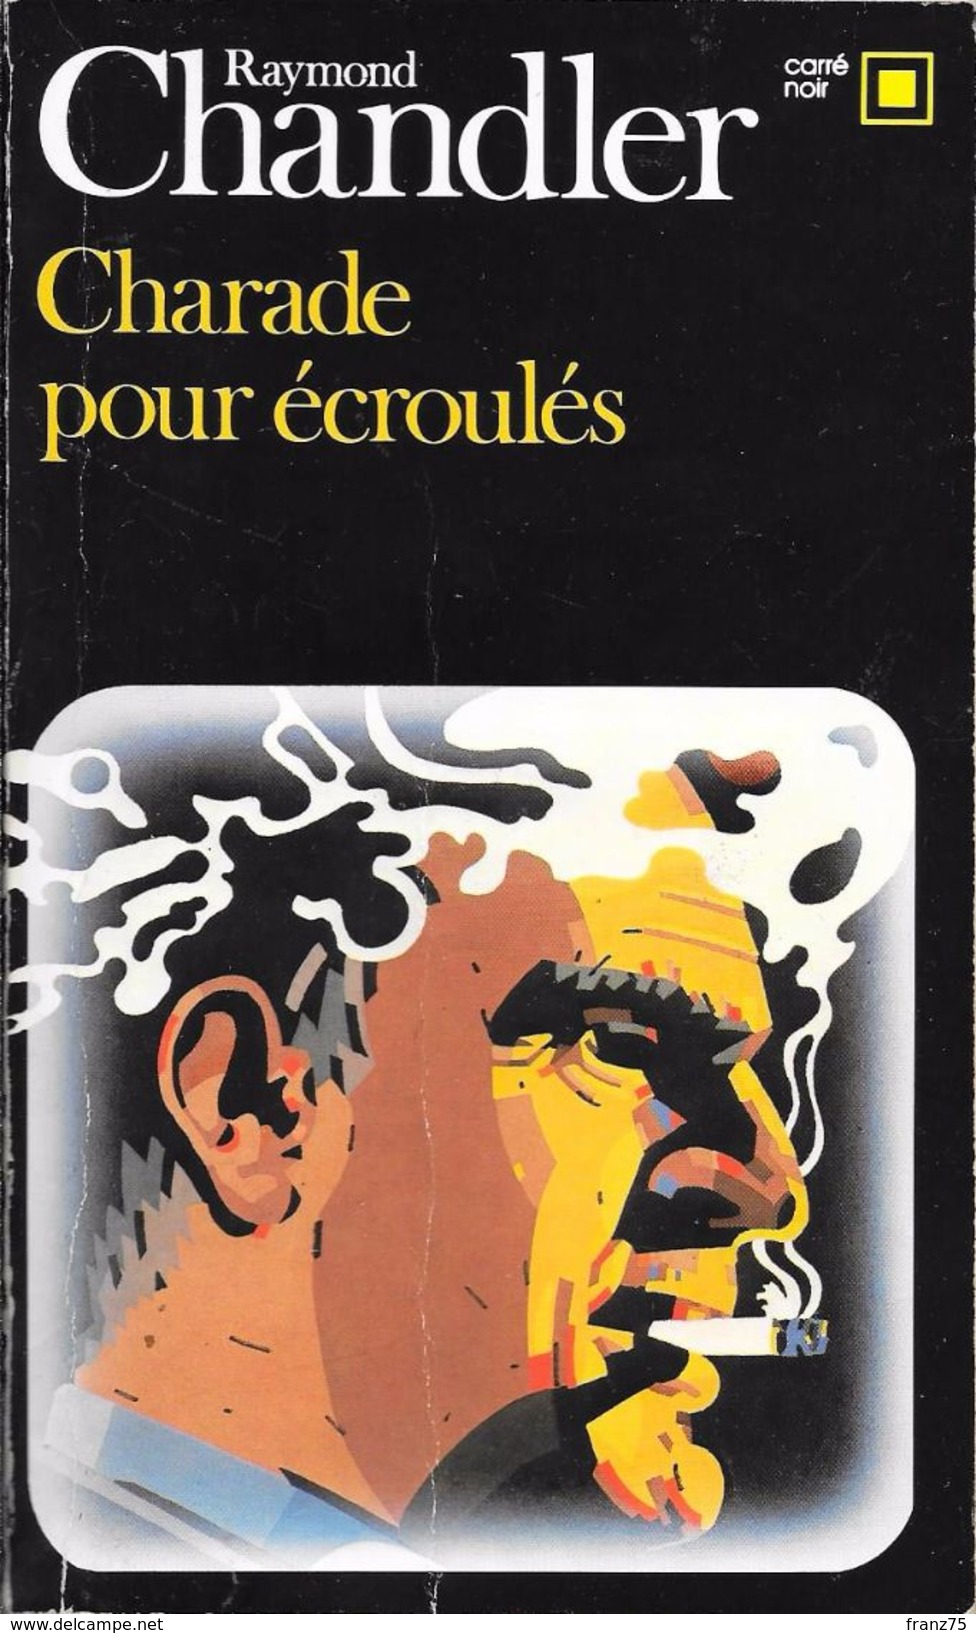 Charade Pour écroulés-R. CHANDLER-1985-Carré Noir--BE - NRF Gallimard